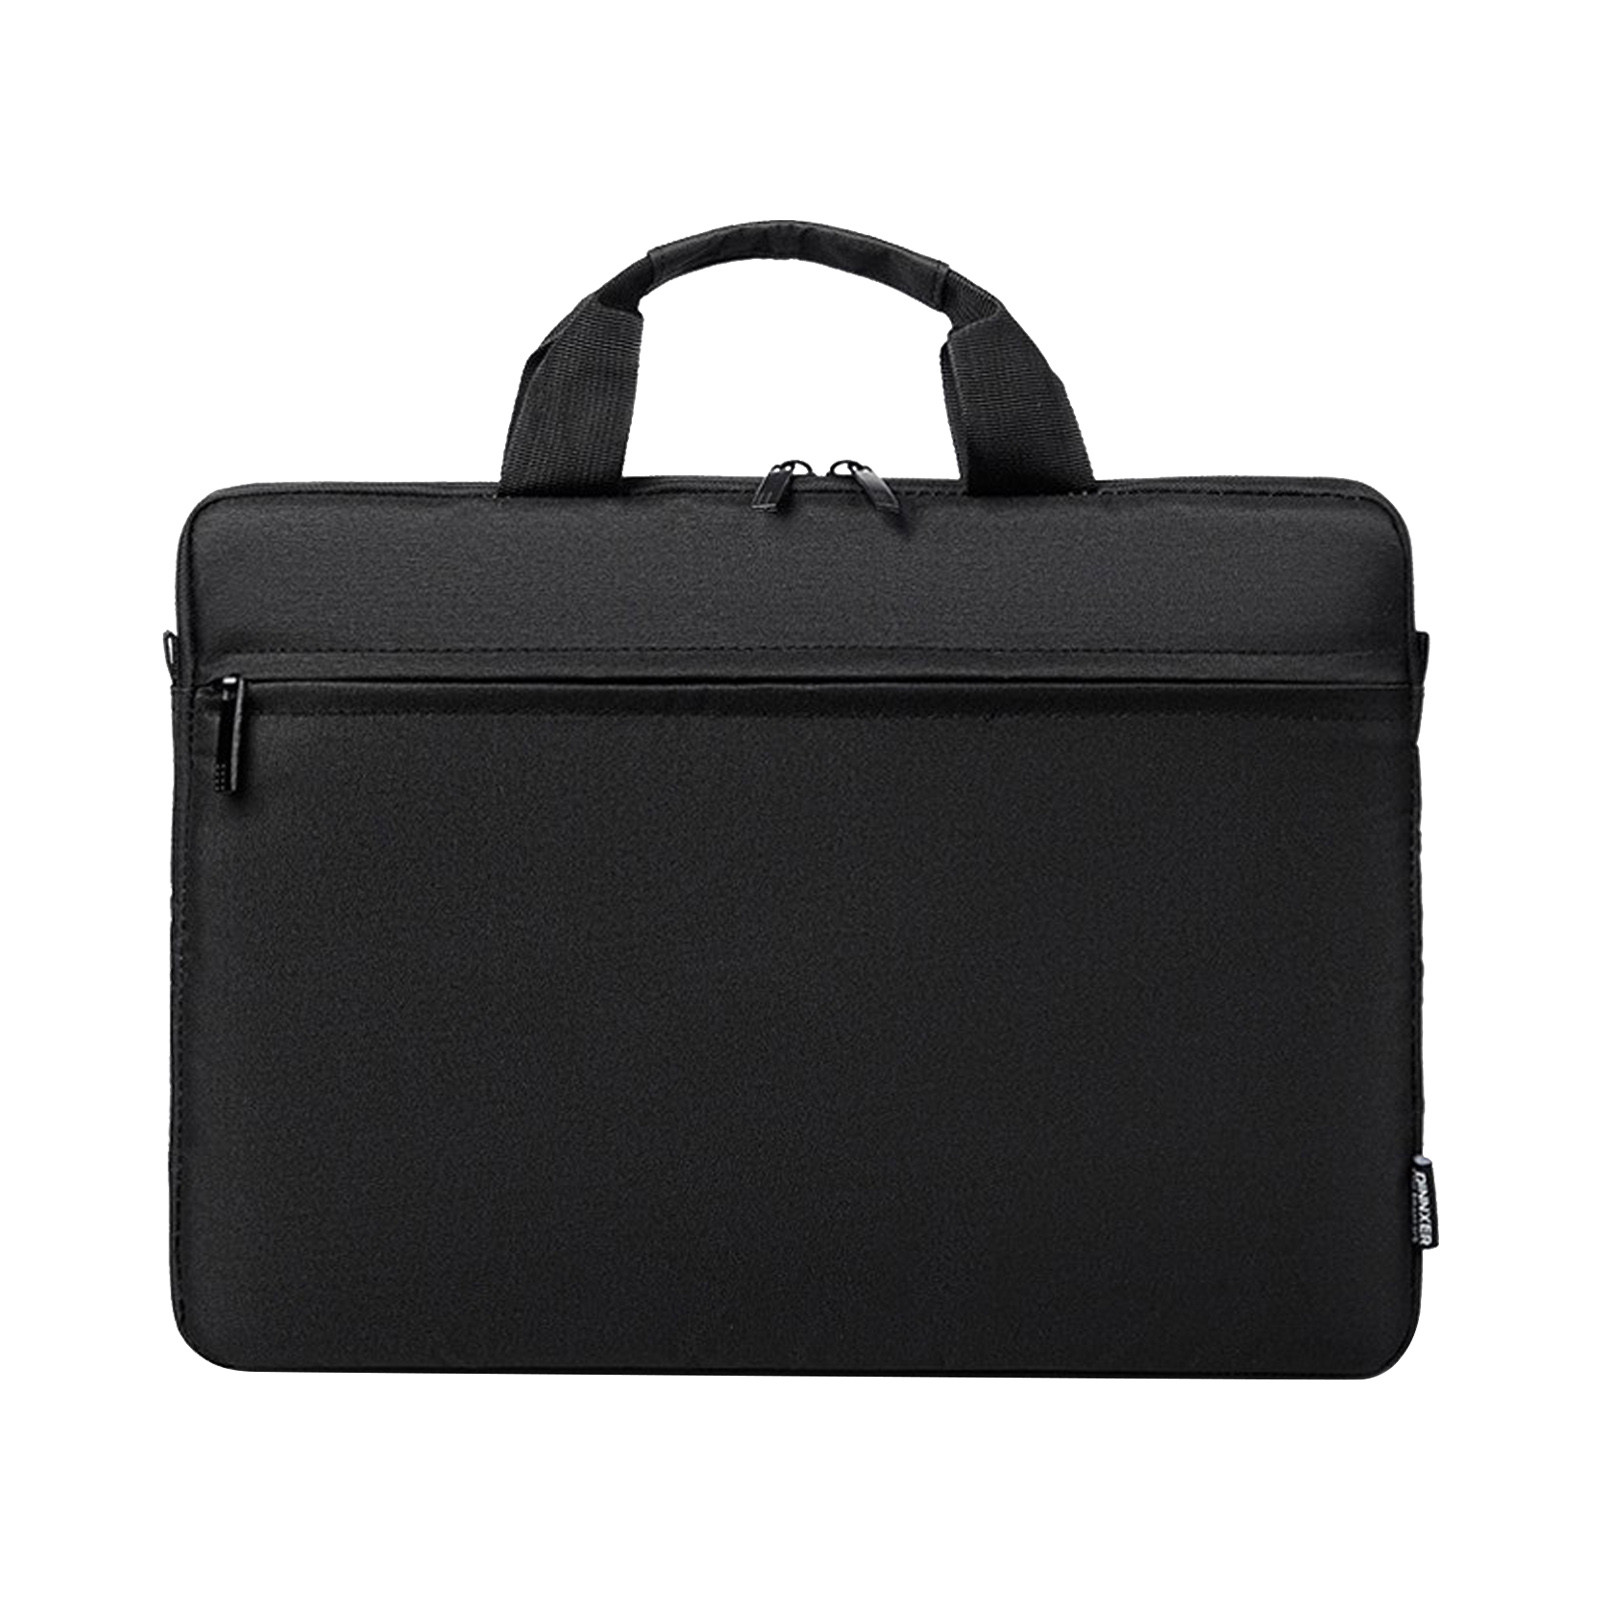 Wovilon Laptop Bag 15.6 Inch Briefcase Shoulder Bag Water Repellent Laptop Bag Satchel Tablet Bussiness Carrying Handbag Laptop Sleeve for Women and Men-Charcoal Black - image 1 of 8